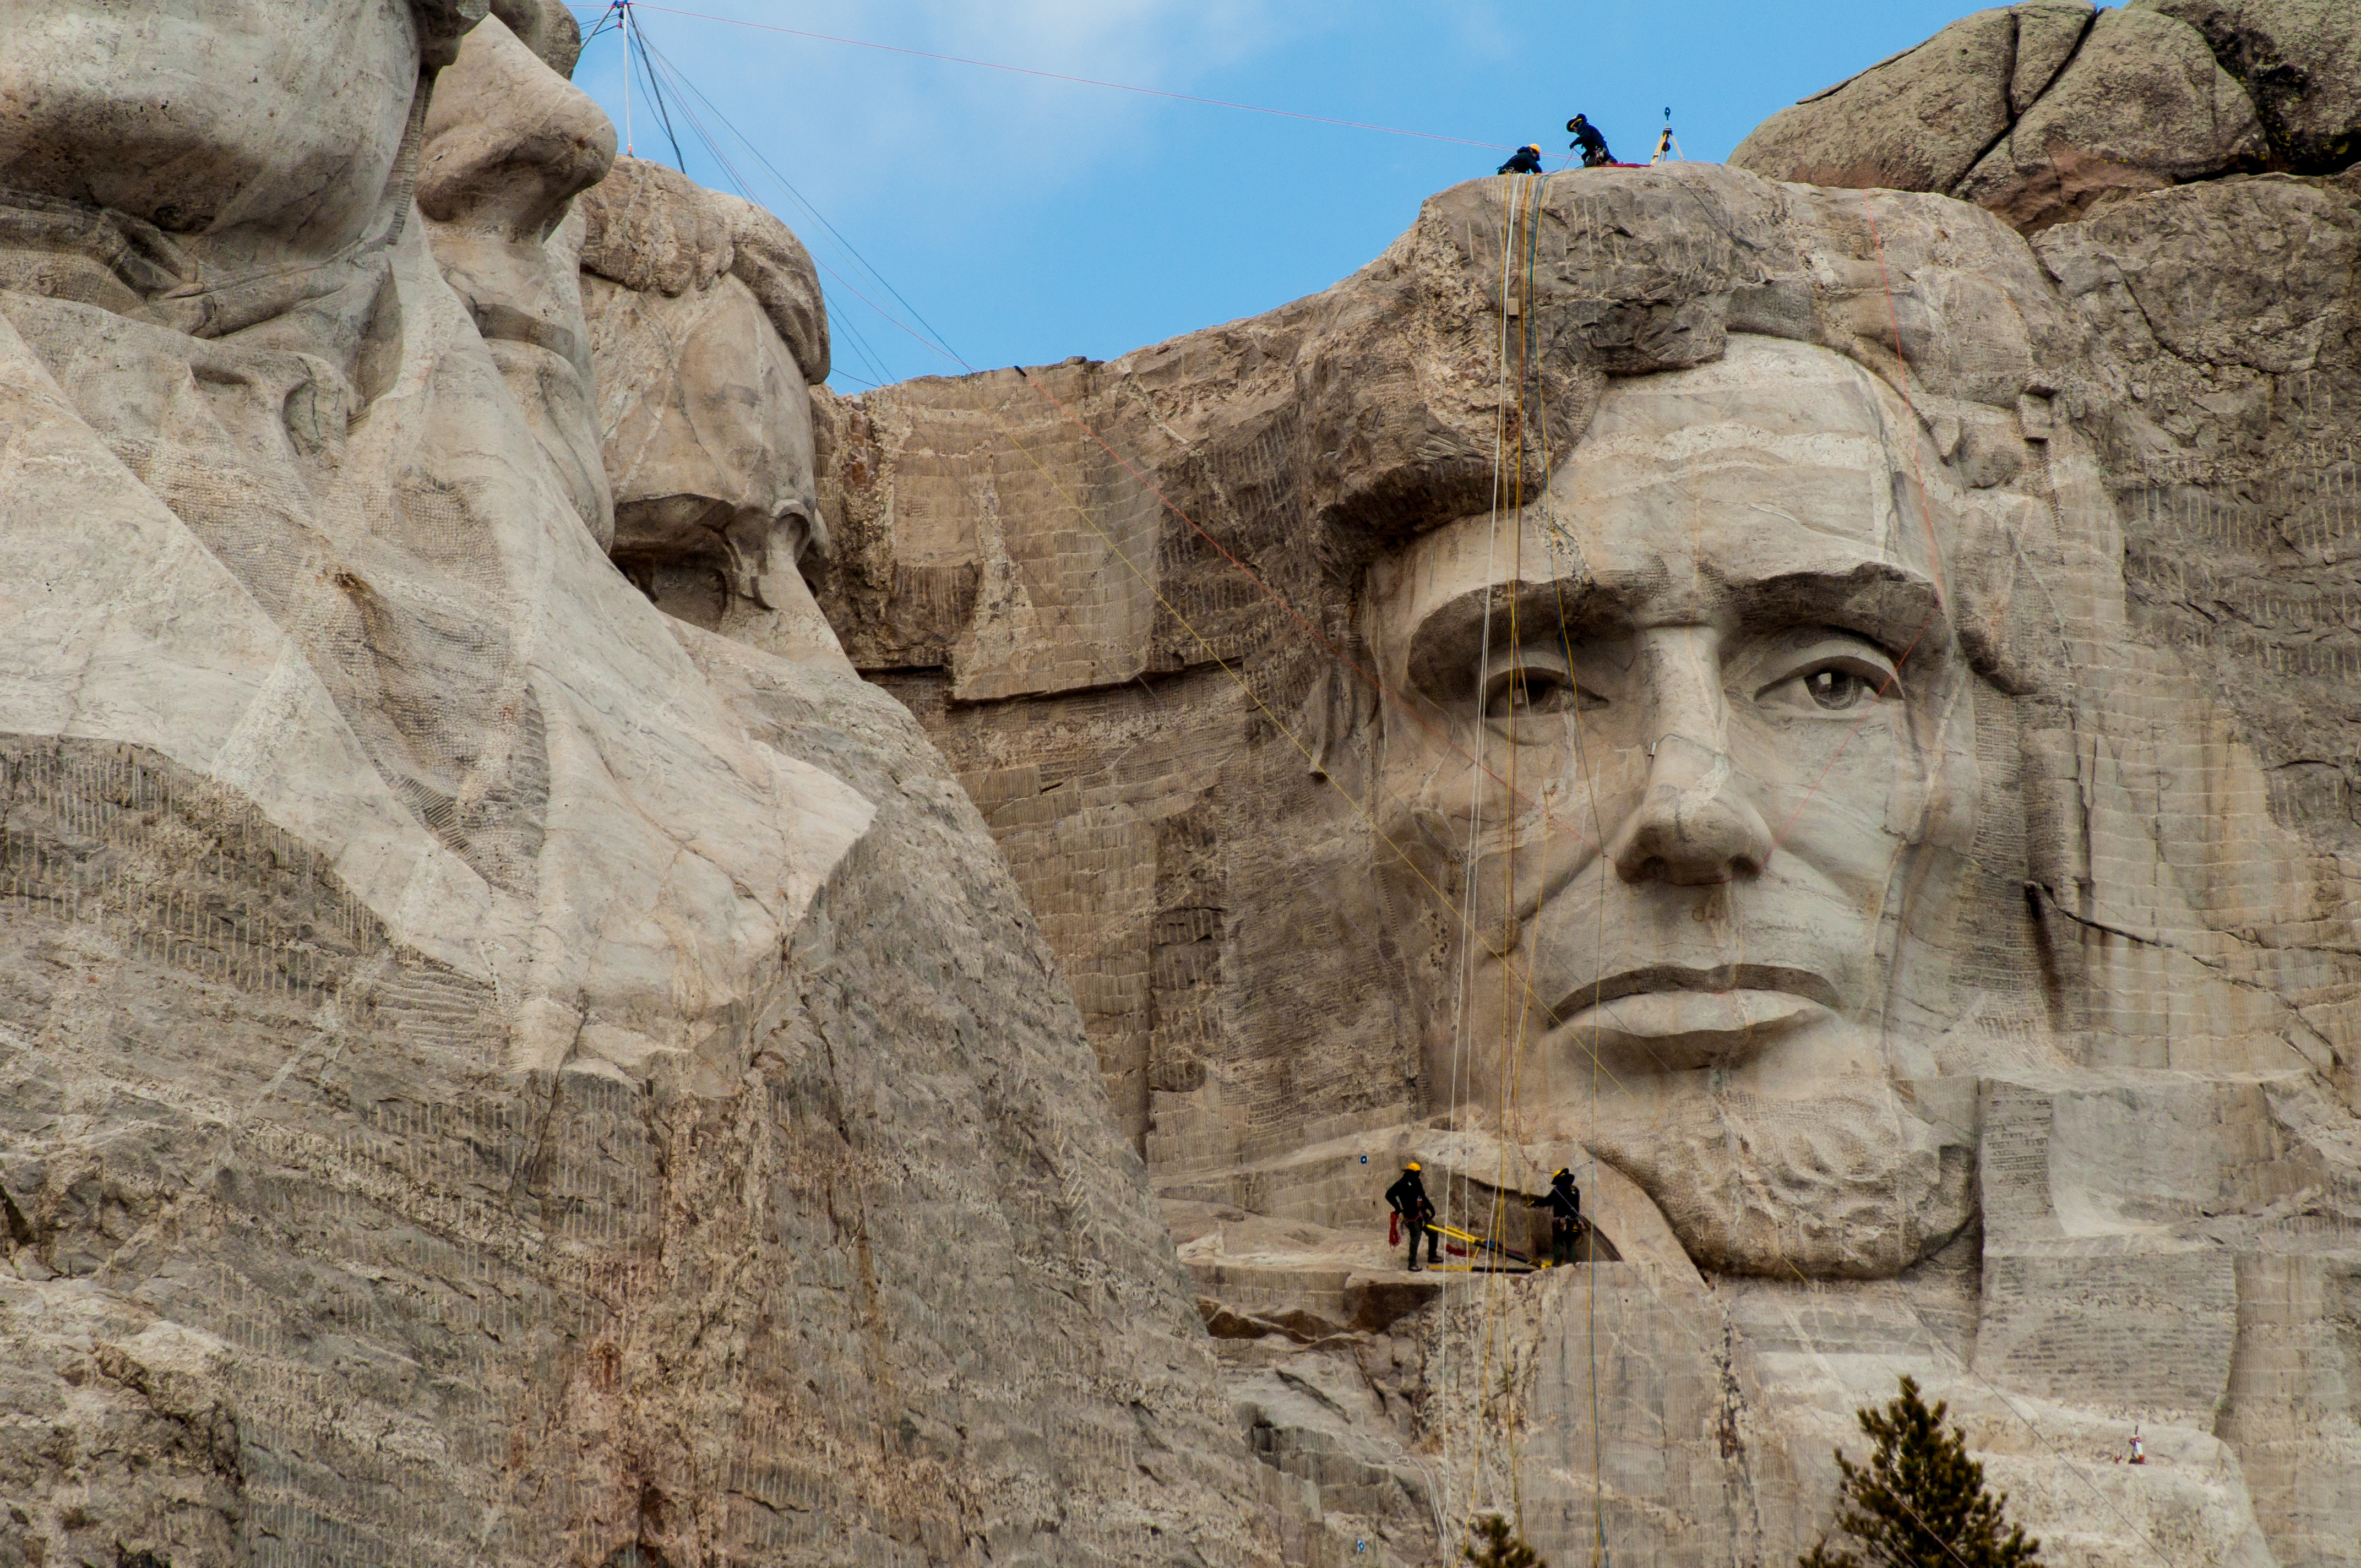 Mount Rushmore National Memorial hero image